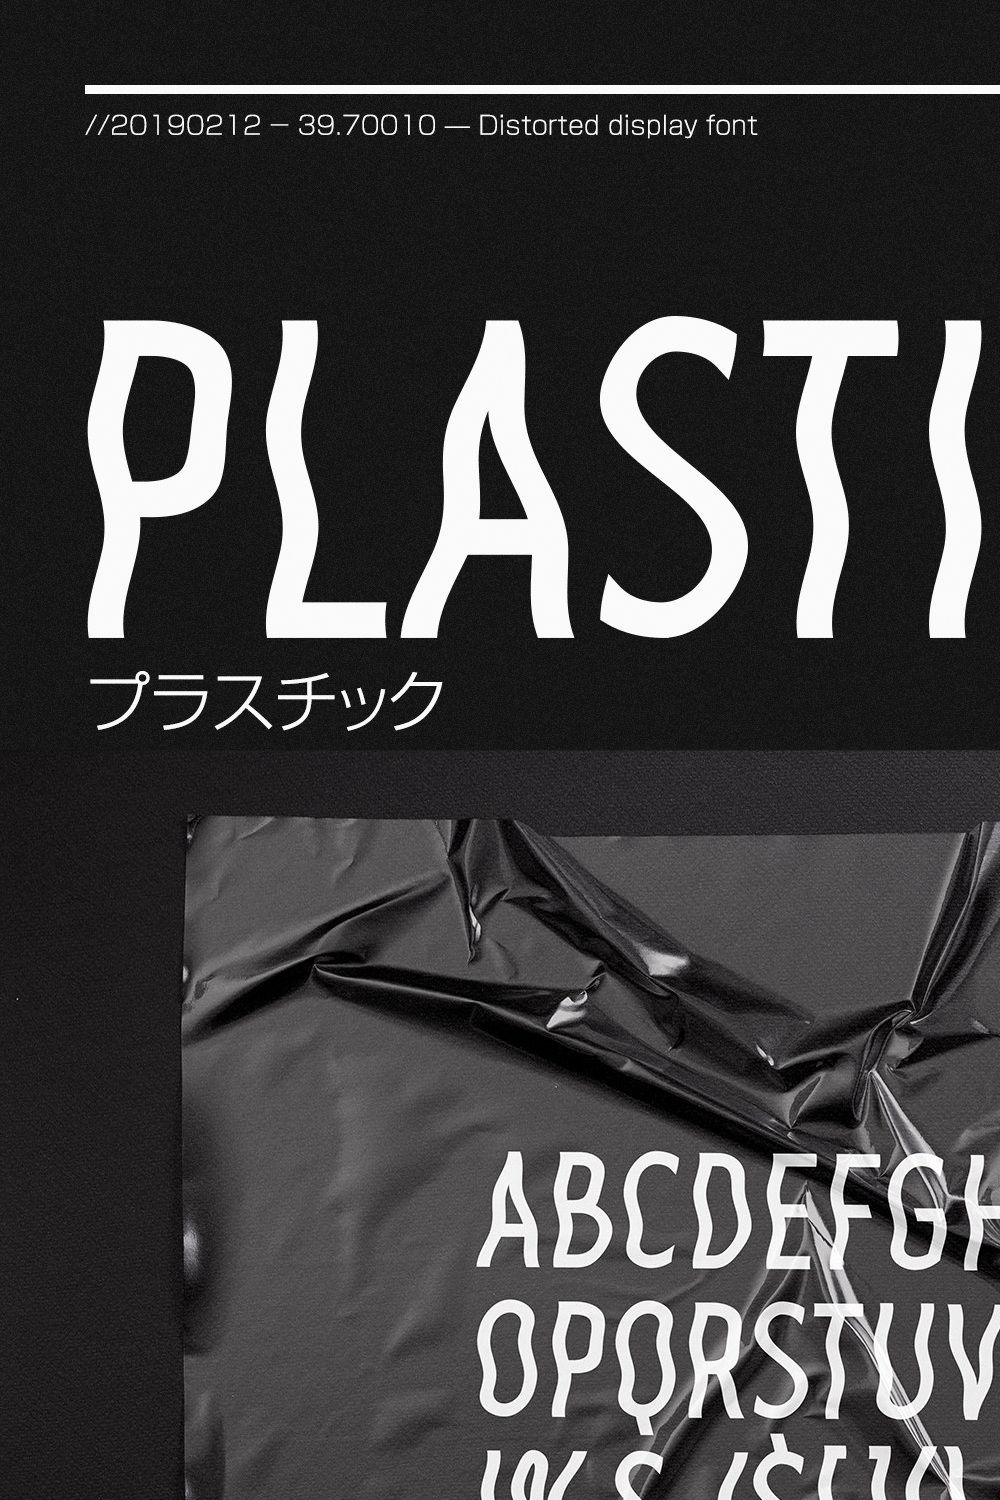 Plastic Sans pinterest preview image.